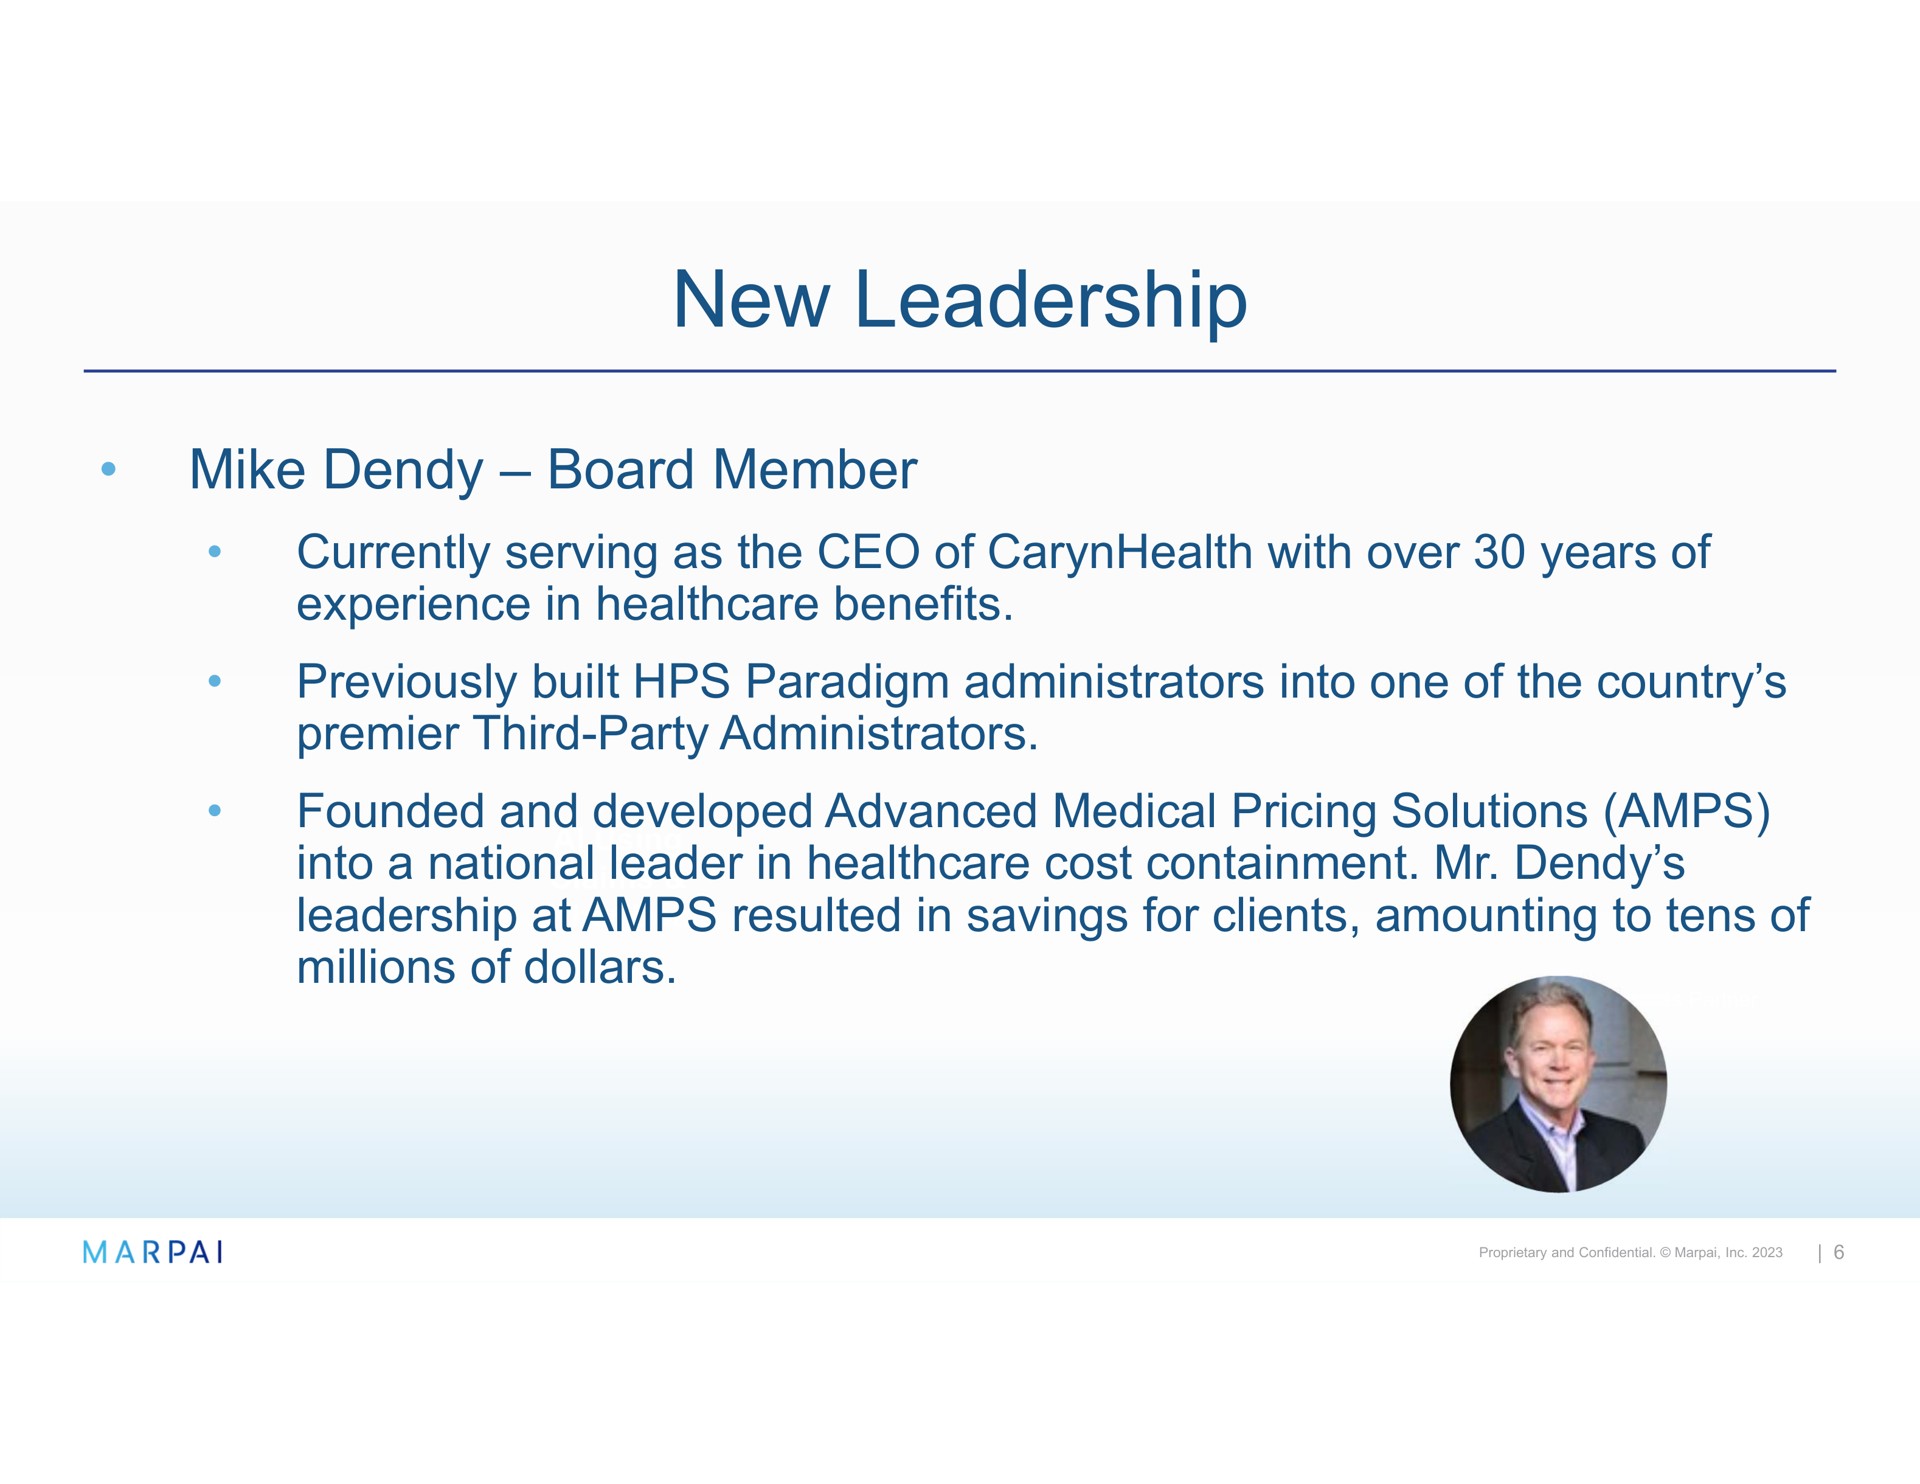 new leadership mike board member | Marpai